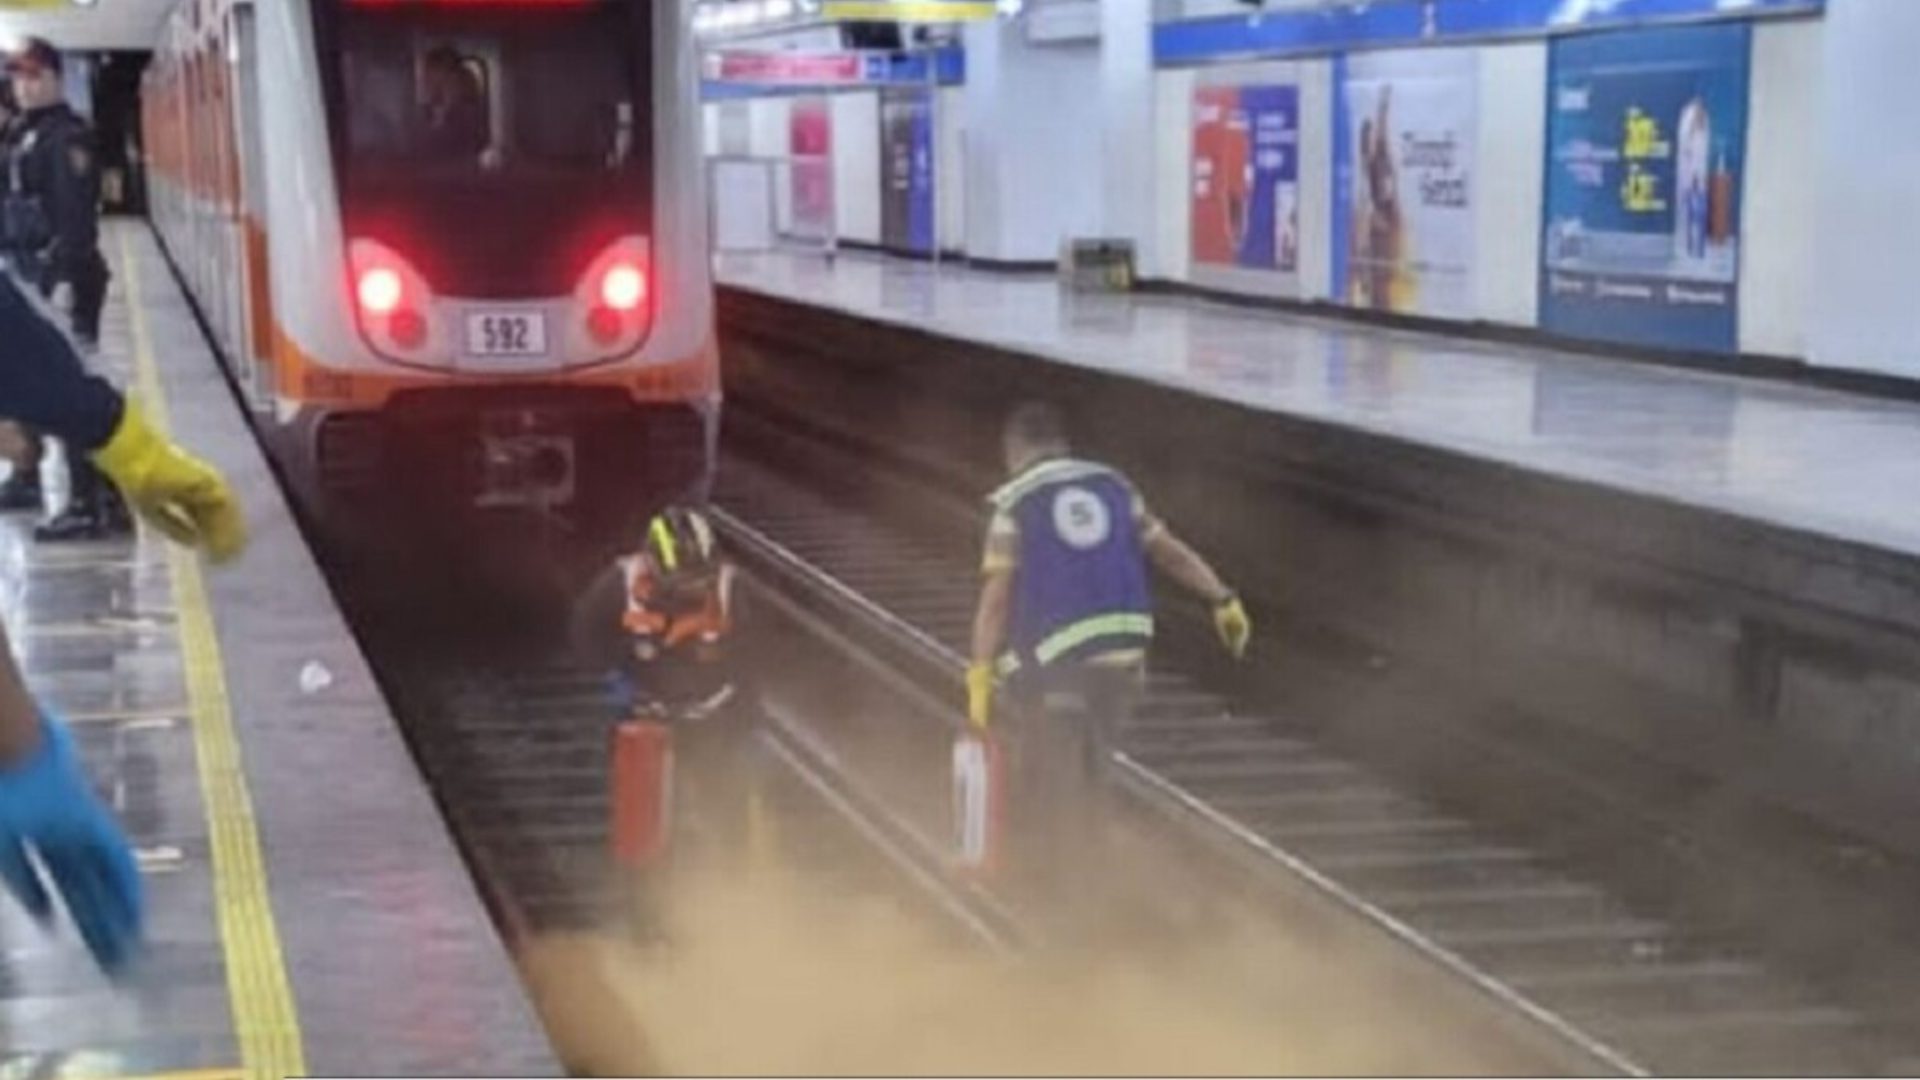 video | Tragedia en un metro | De muerte heroica a asesinato y suicido pasional